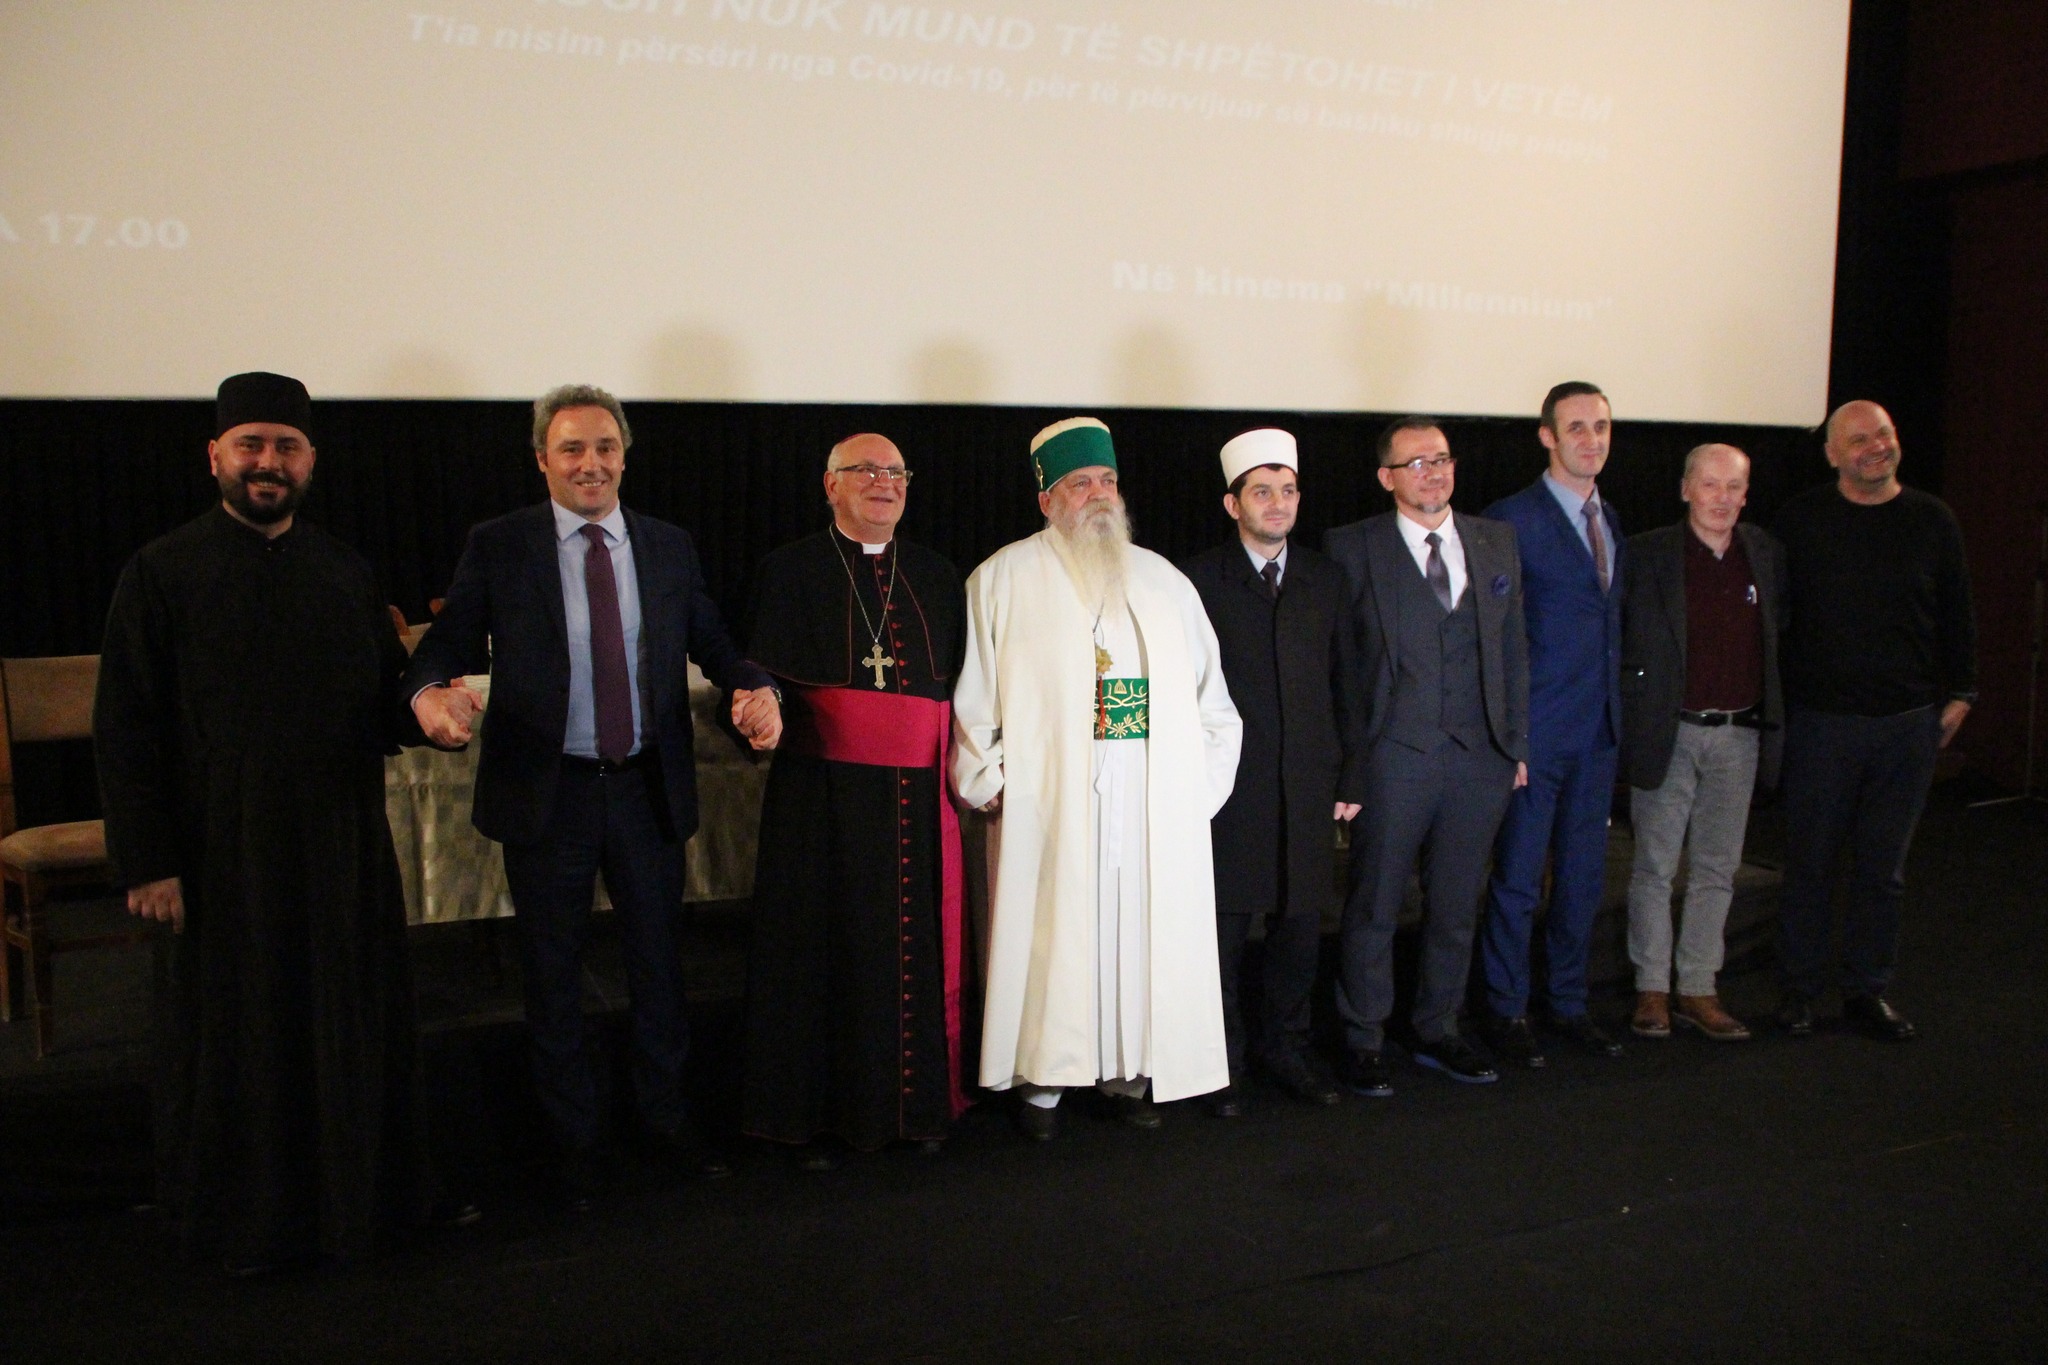 Përfaqësuesit e të gjithë feve në Shqipëri moren pjësë në takimin e përvitshëm i cili prezanton Mesazhin e Paqes të Papa Françeskut